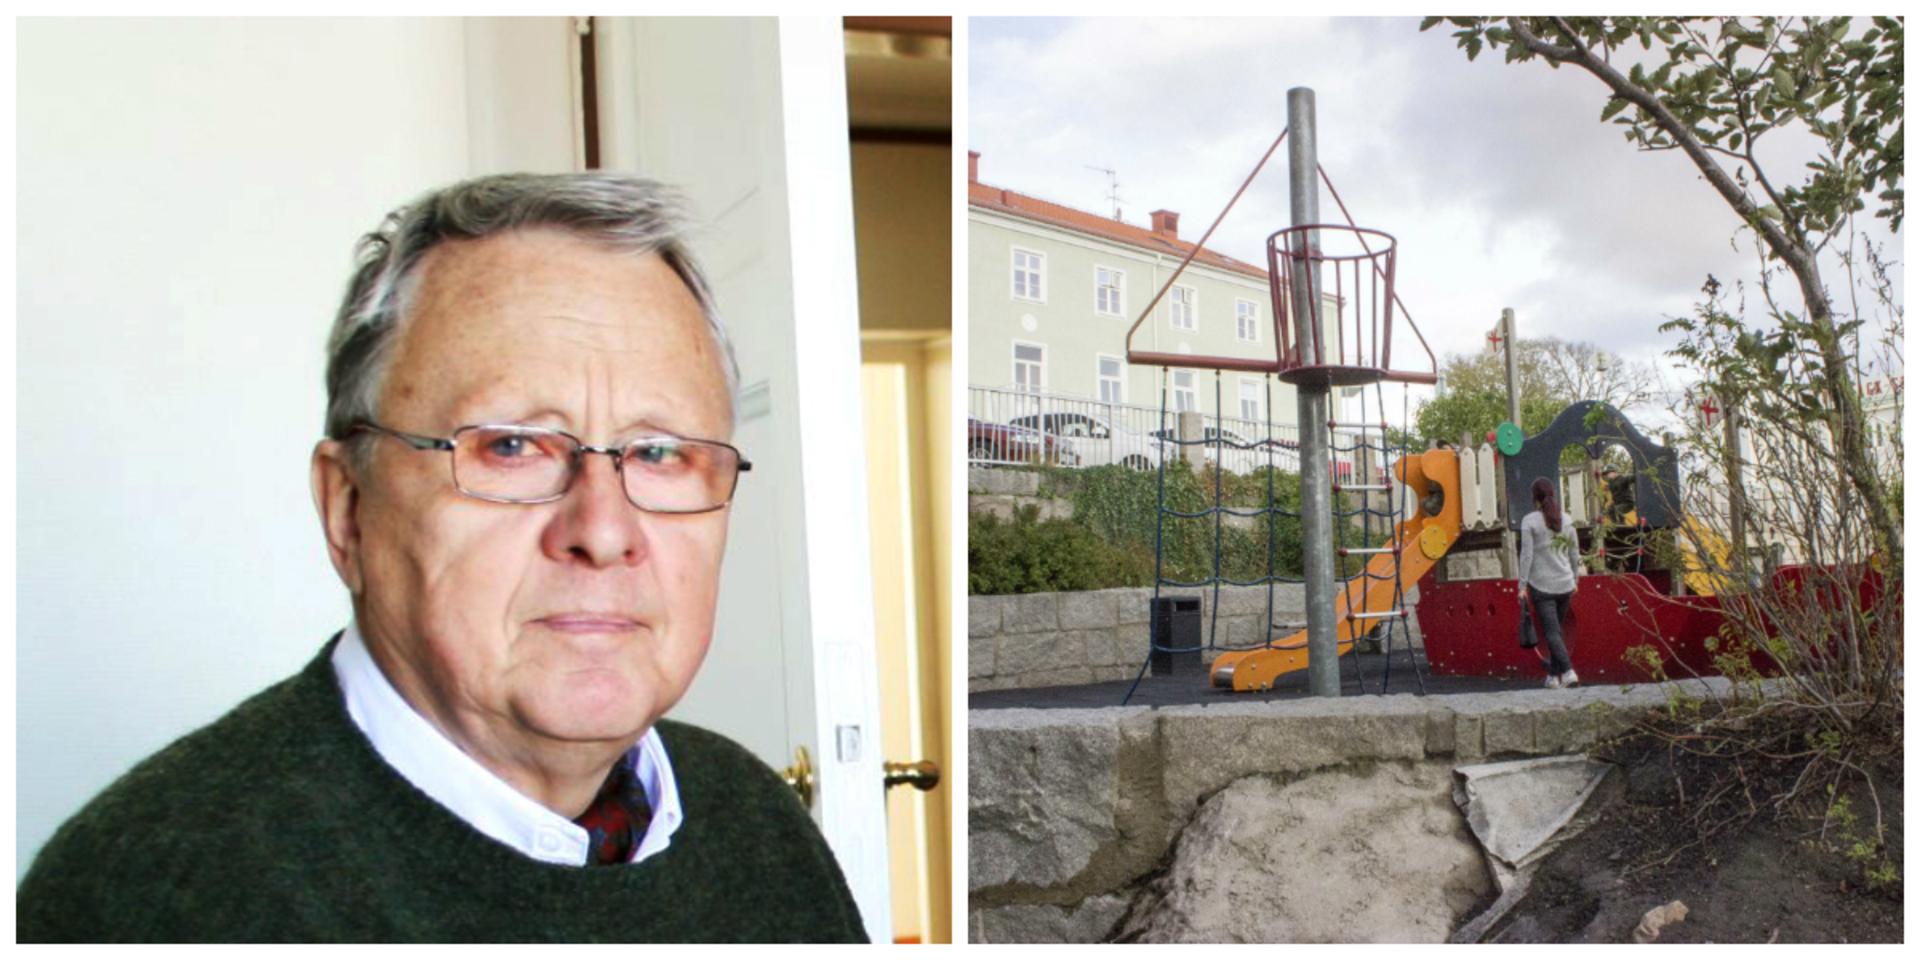 Lars Georgsson menar att kommunen har viktigare uppgifter än att bygga en ny lekplats i centrum.